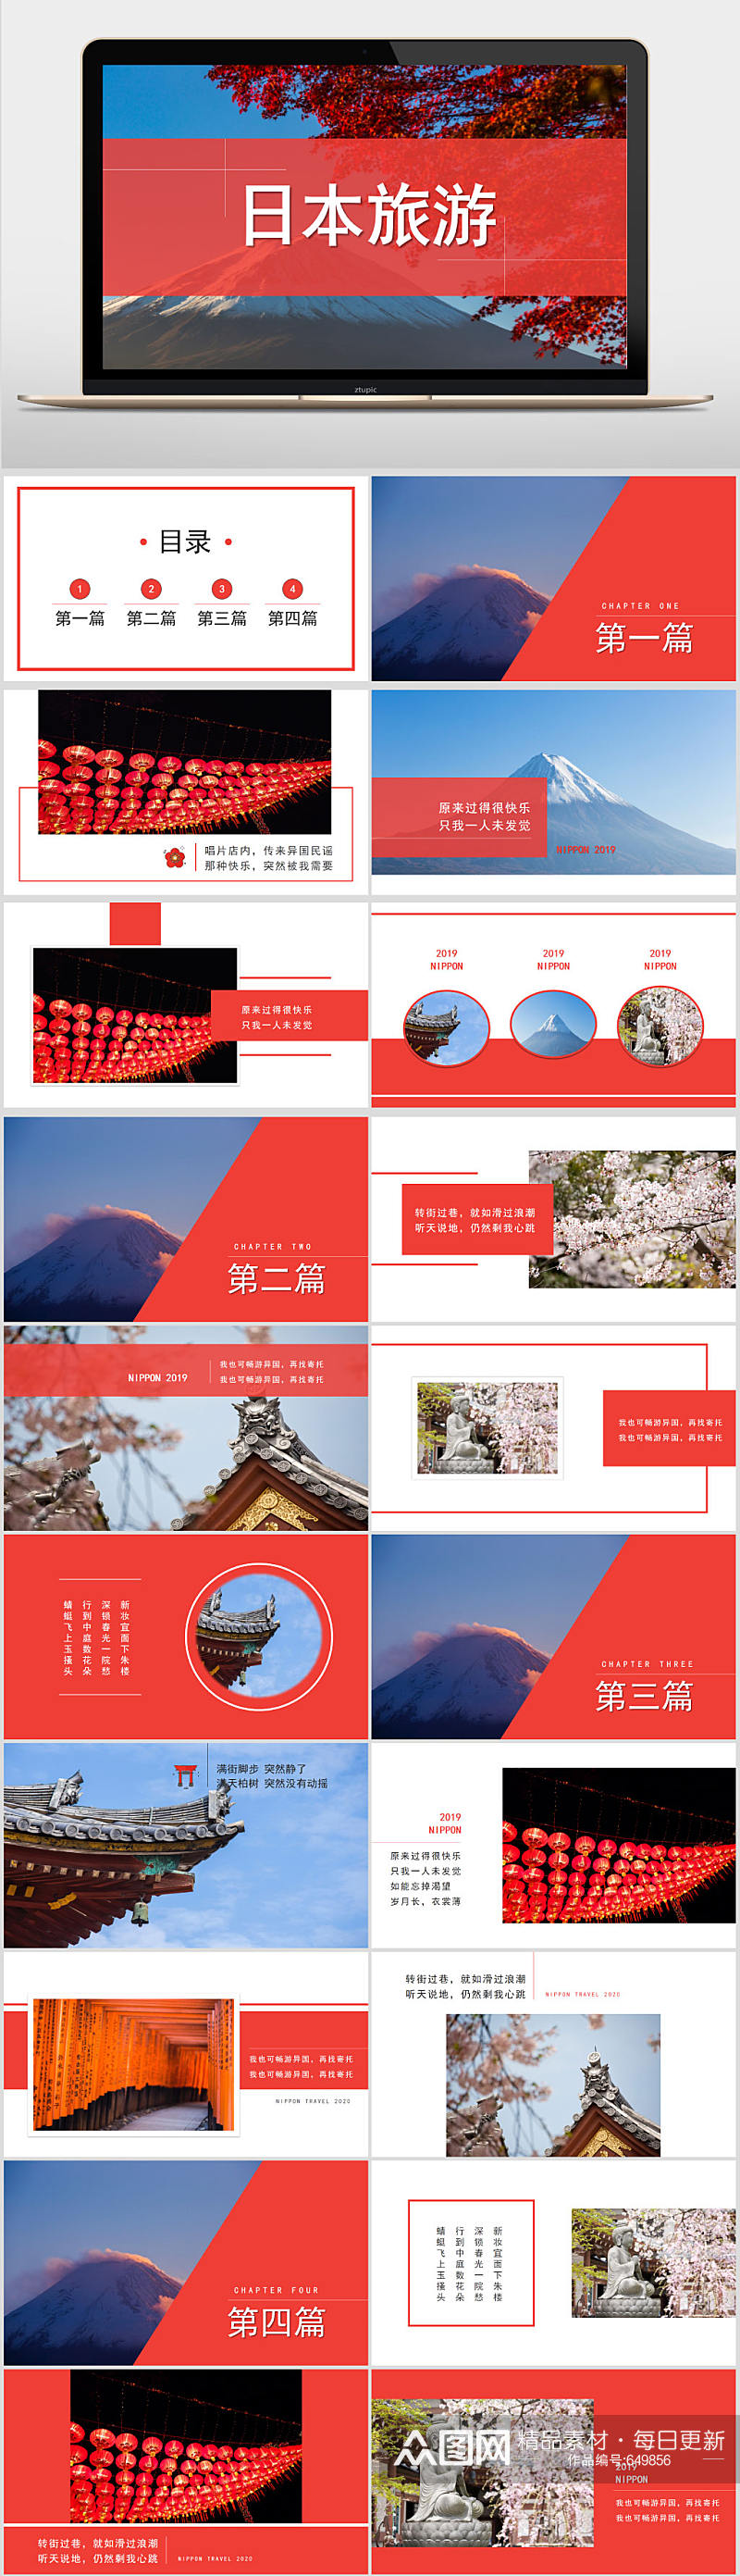 典雅中国风日本旅游PPT相册模板素材